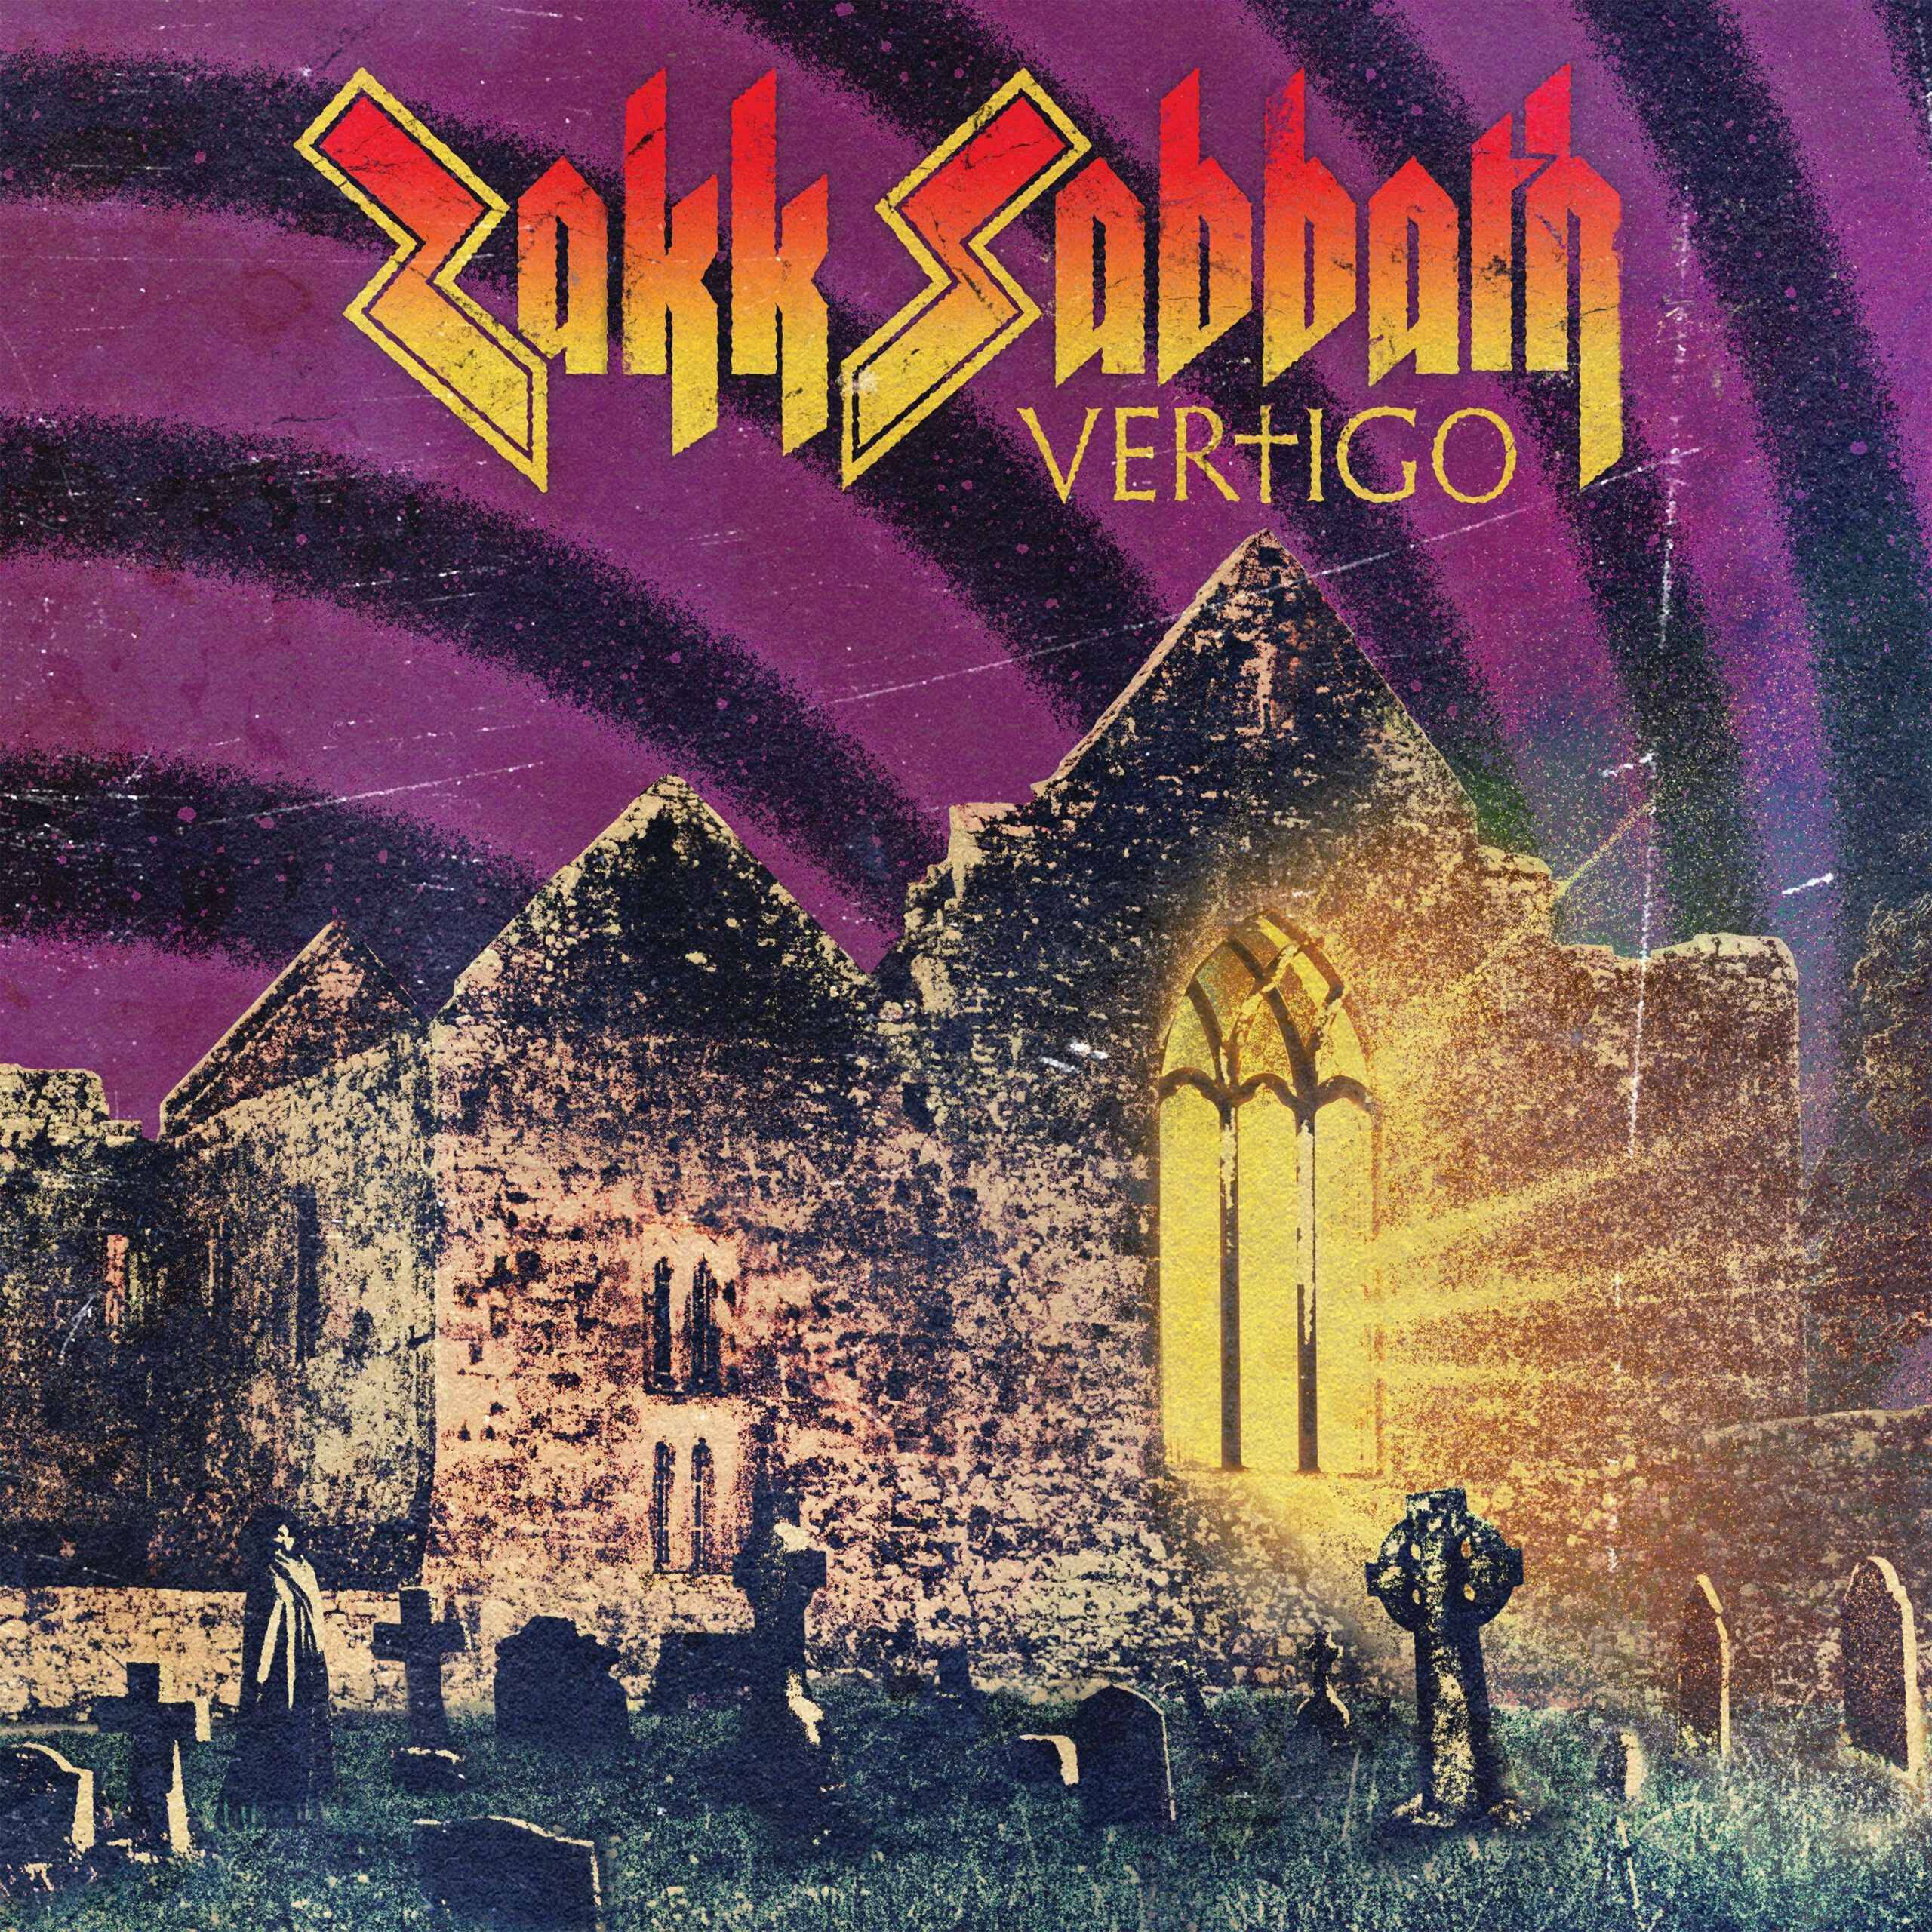 Black Sabbath-Cover-Album "Vertigo" angekündigt